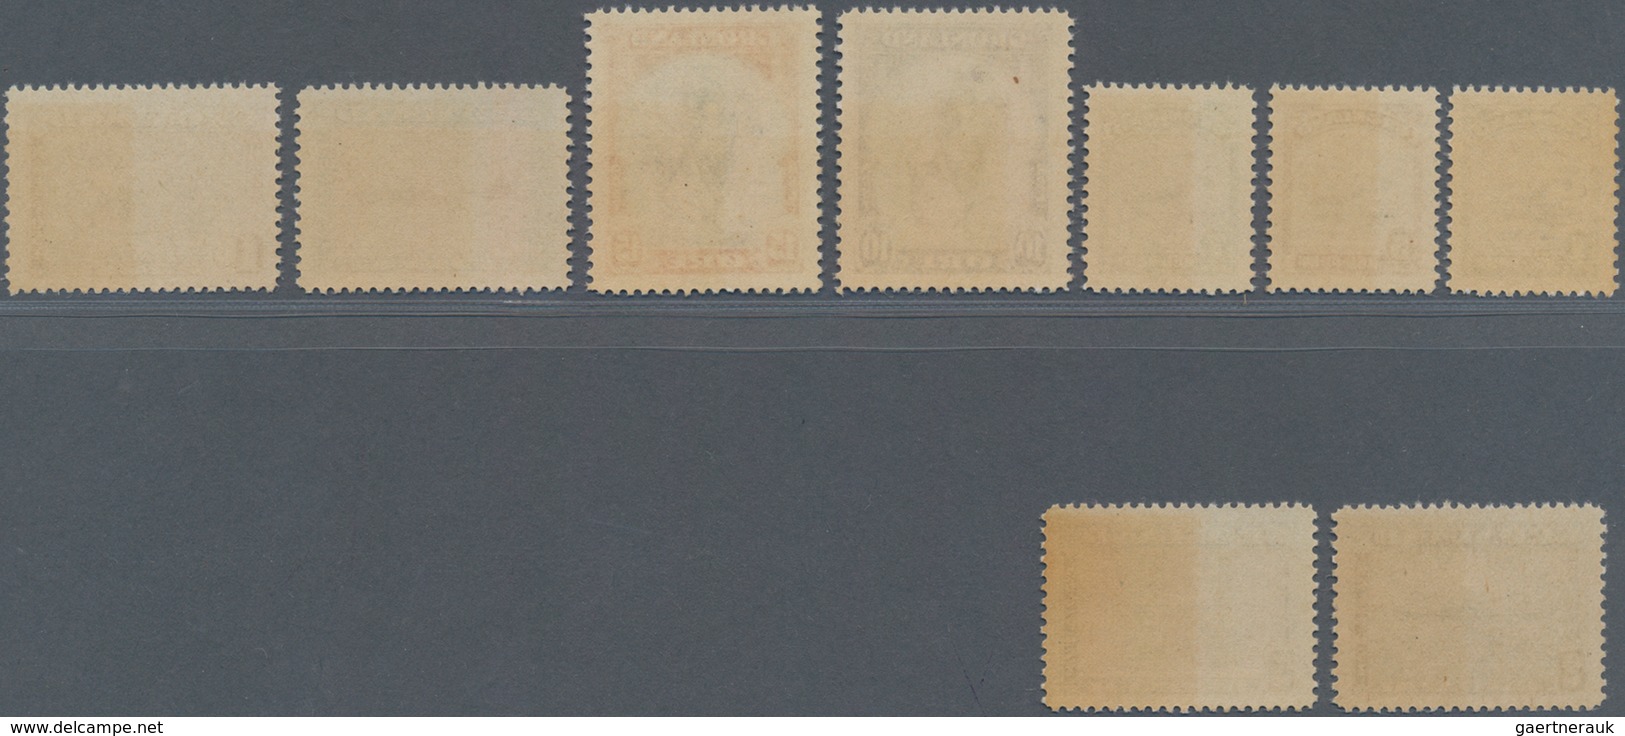 Dänemark - Grönland: 1916/45 Paketportomarken Der 2. Ausgabe Sowie Freimarkenausgabe, Diese Rückseit - Covers & Documents